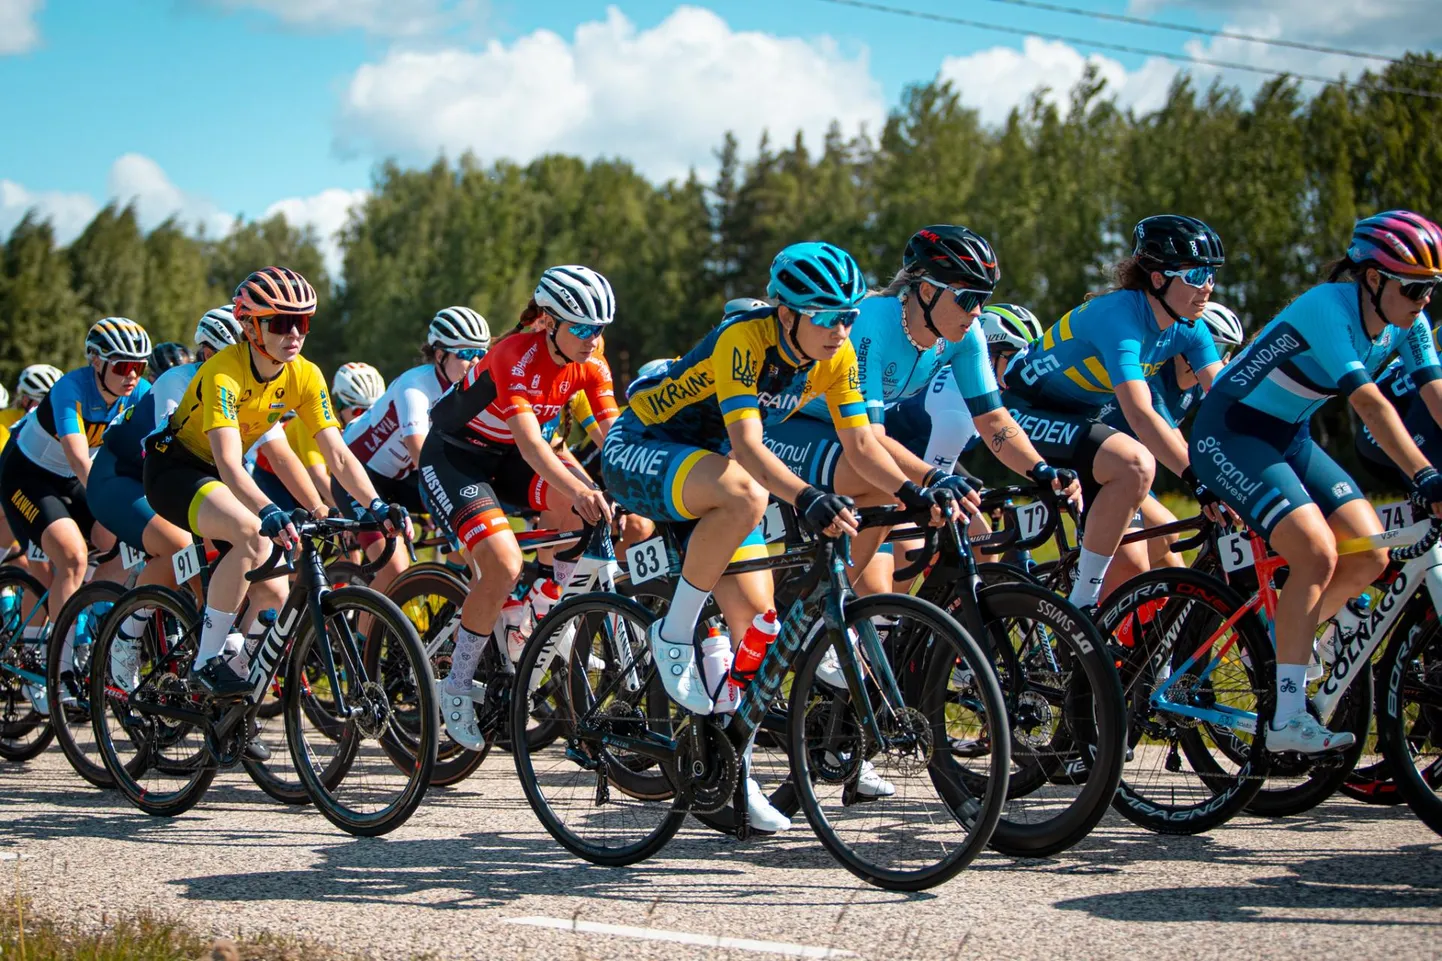 Laupäeval on Tartus ühepäevasõit Ladies Tour of Estonia, kus osalevad tugevad välismaa ratturid ja Eesti paremik, sealhulgas Viljandi rattakasvandikud Elina Tasane ja Kristel Sandra Soonik.